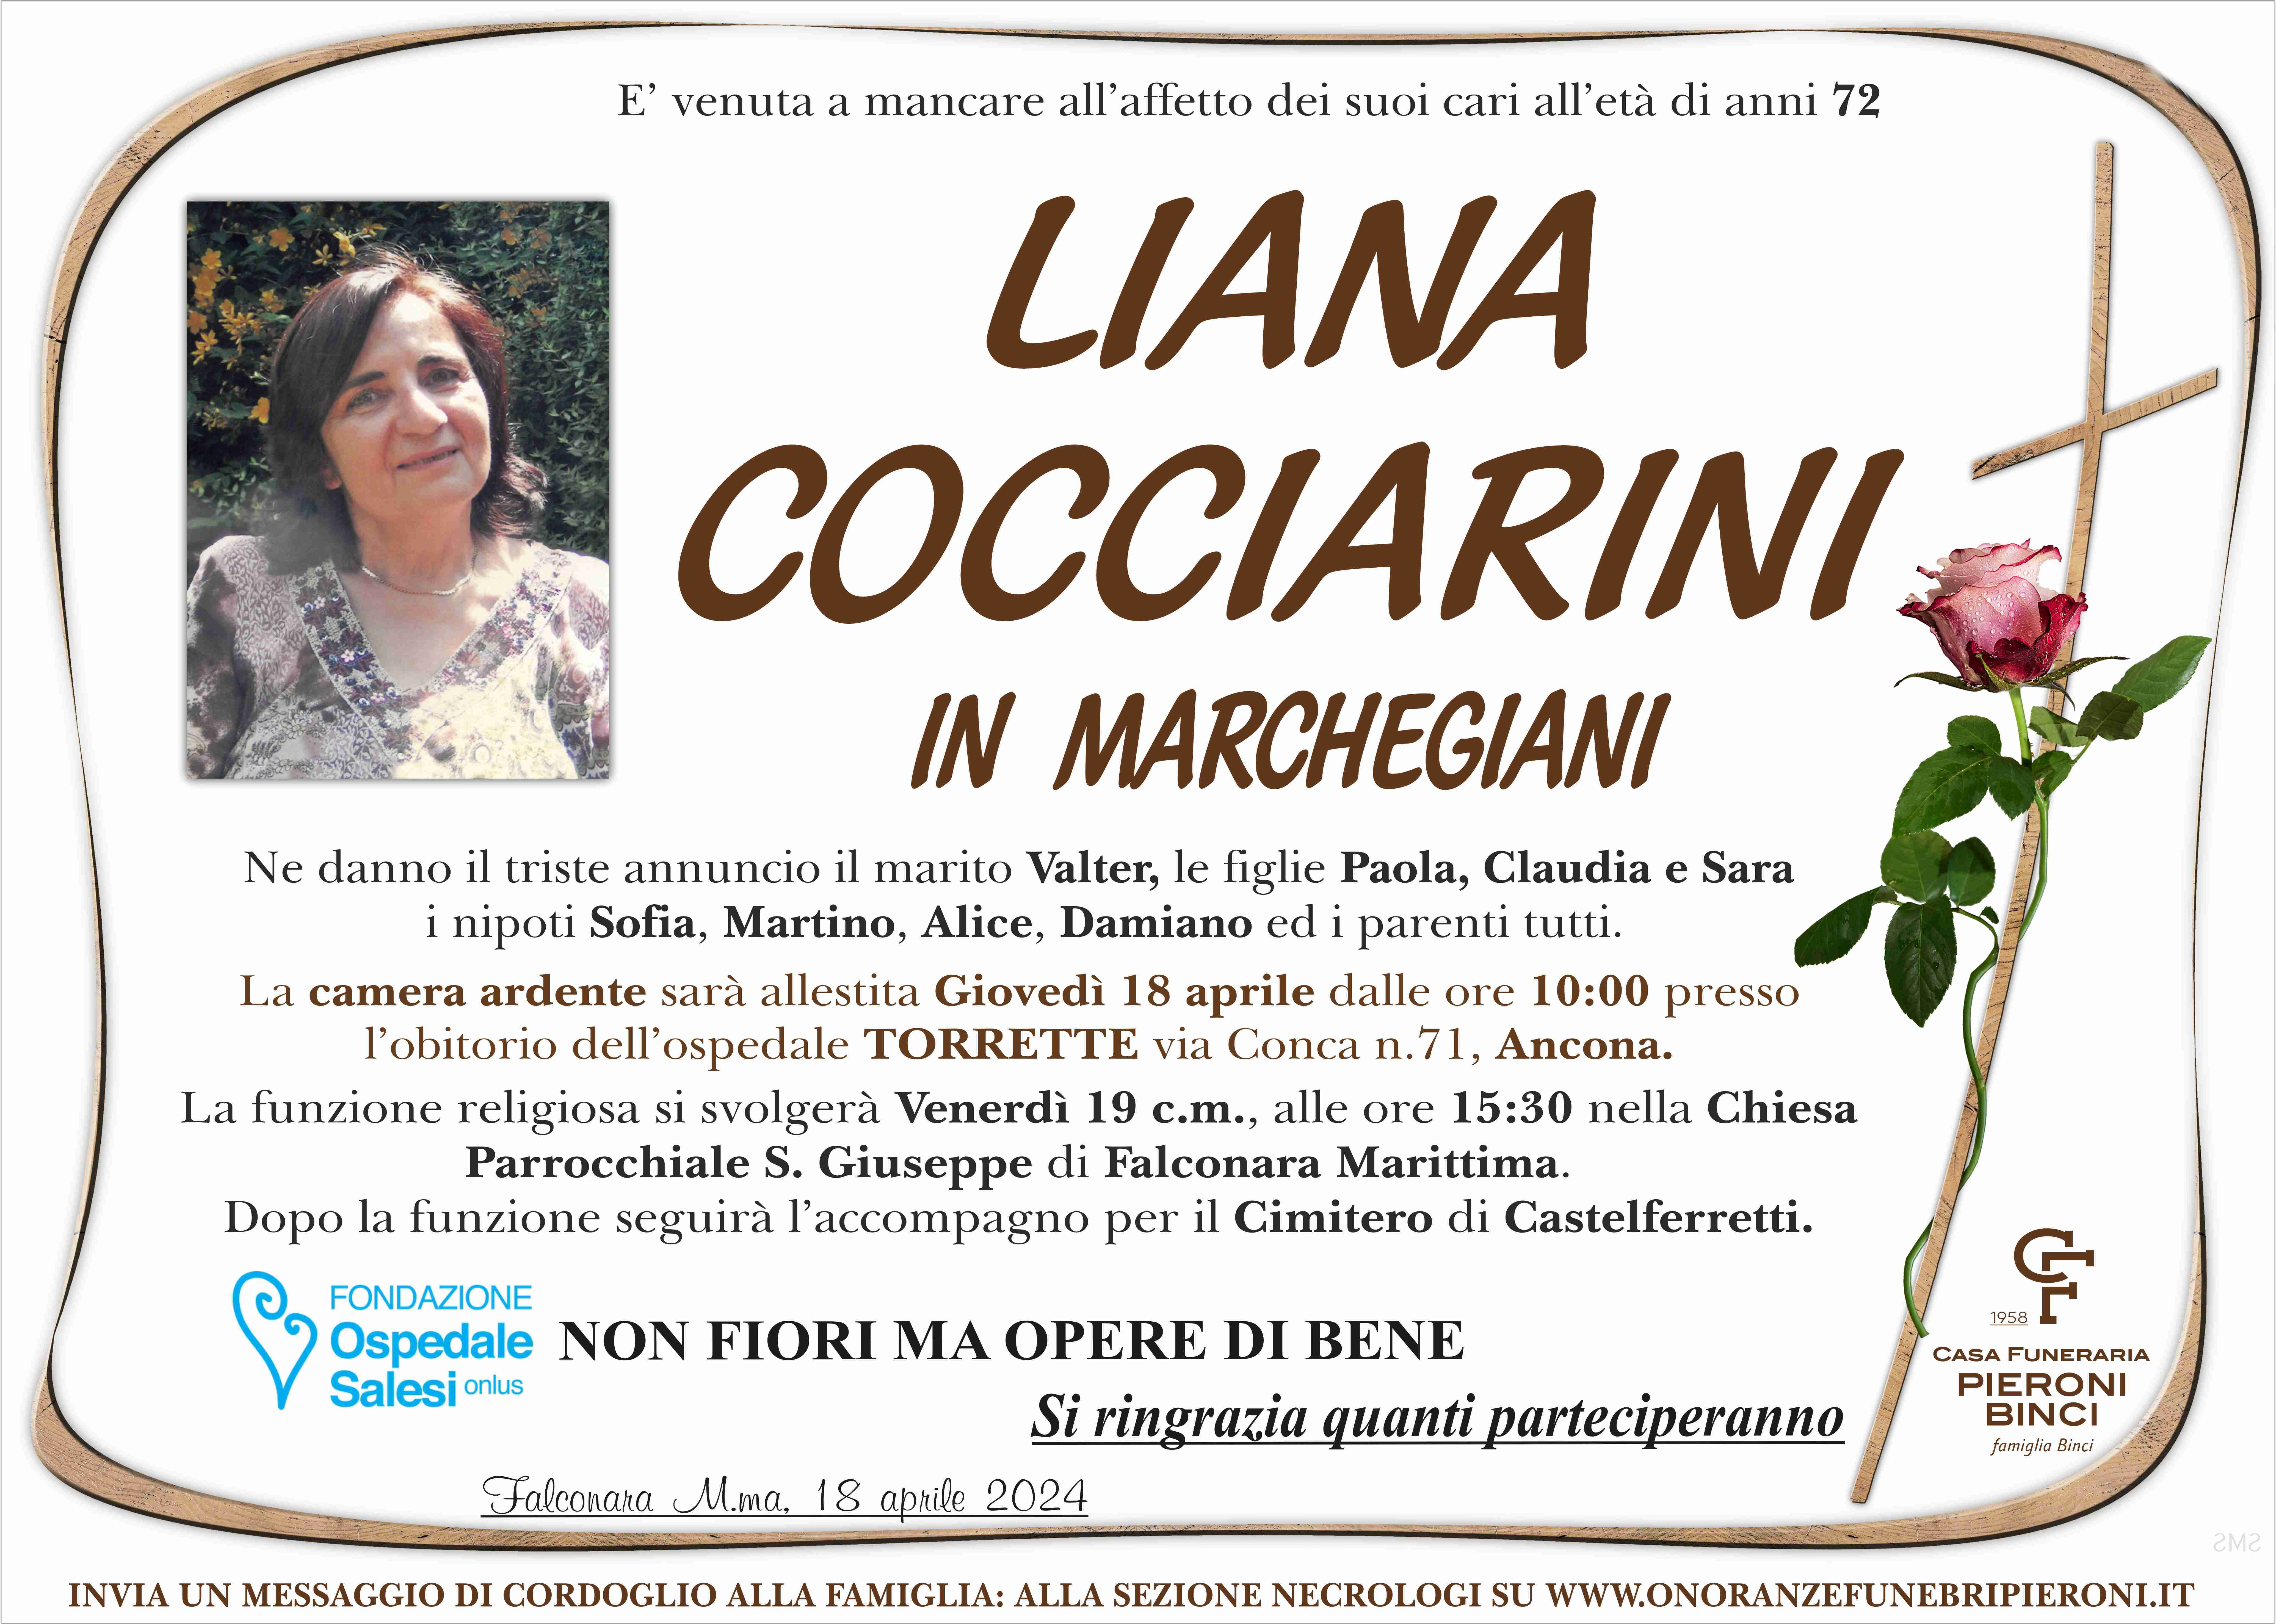 Liana Cocciarini